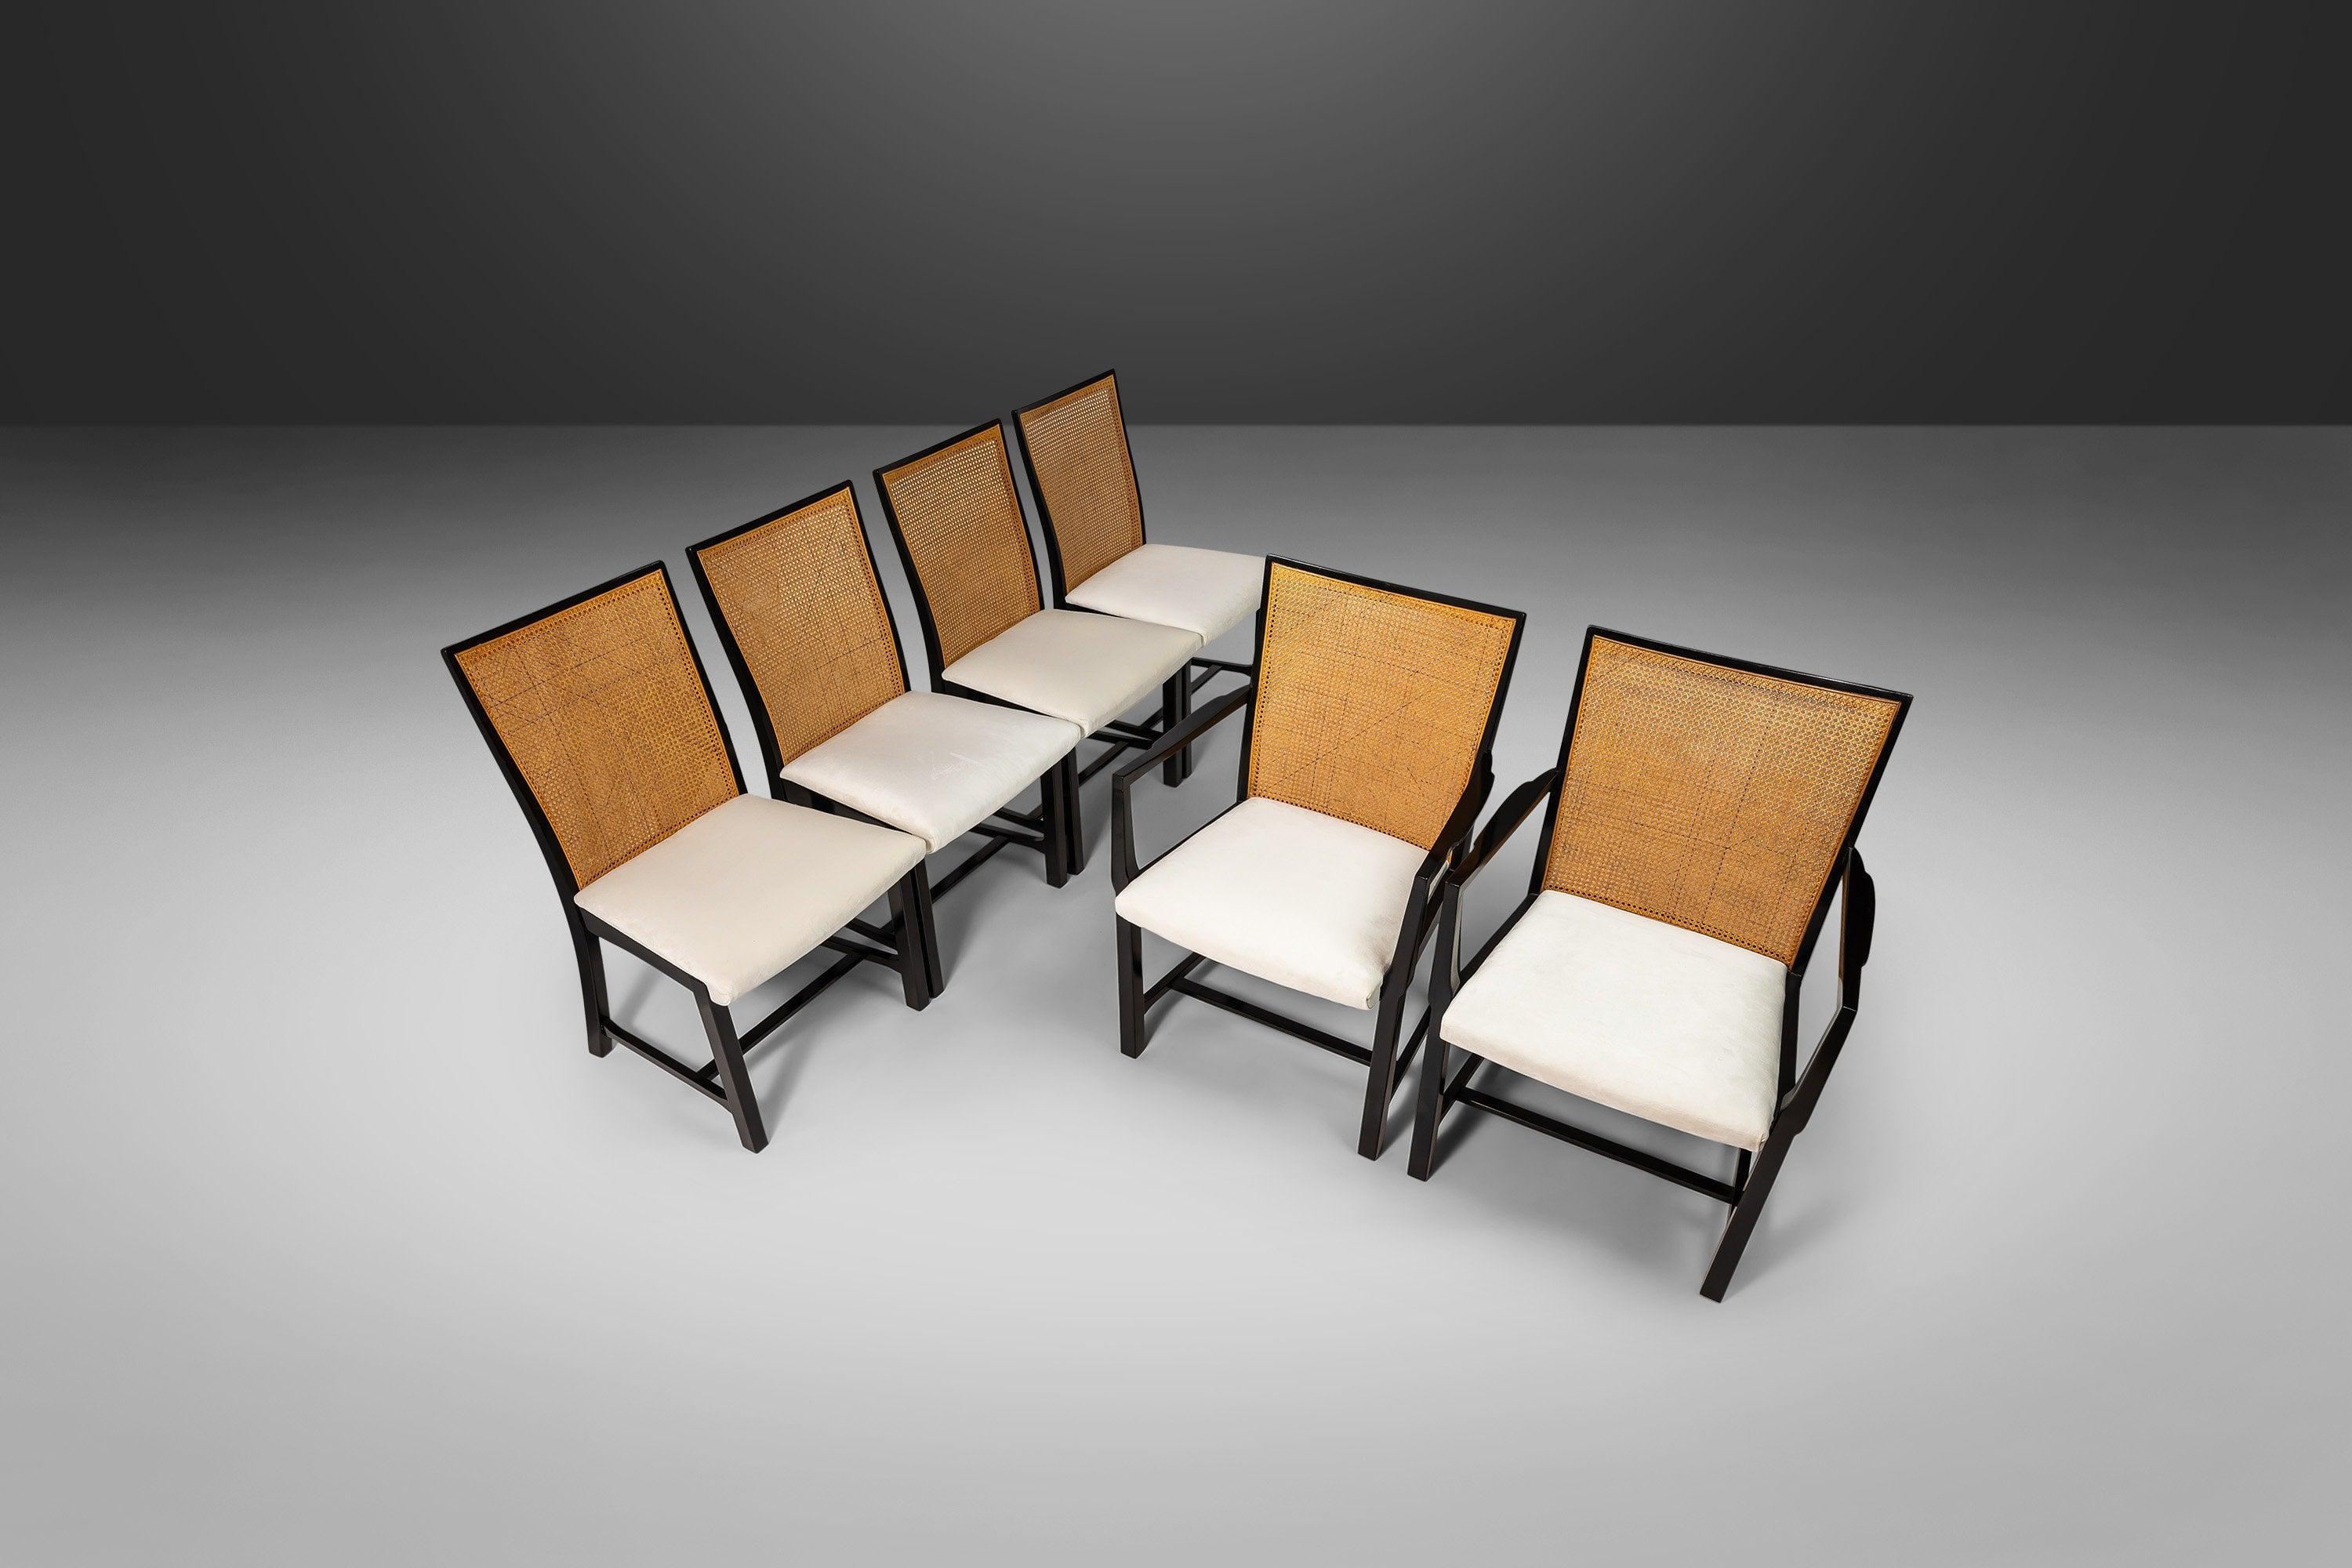 Selten, außergewöhnlich, sehr sammelwürdig und einbaufertig. Dieses Set aus 6 Stühlen (4 Beistellstühle und 2 Sessel) ist aus der New World Collection'S, die von Michael Taylor für Baker Furniture entworfen wurde. Das Set ist meisterhaft aus